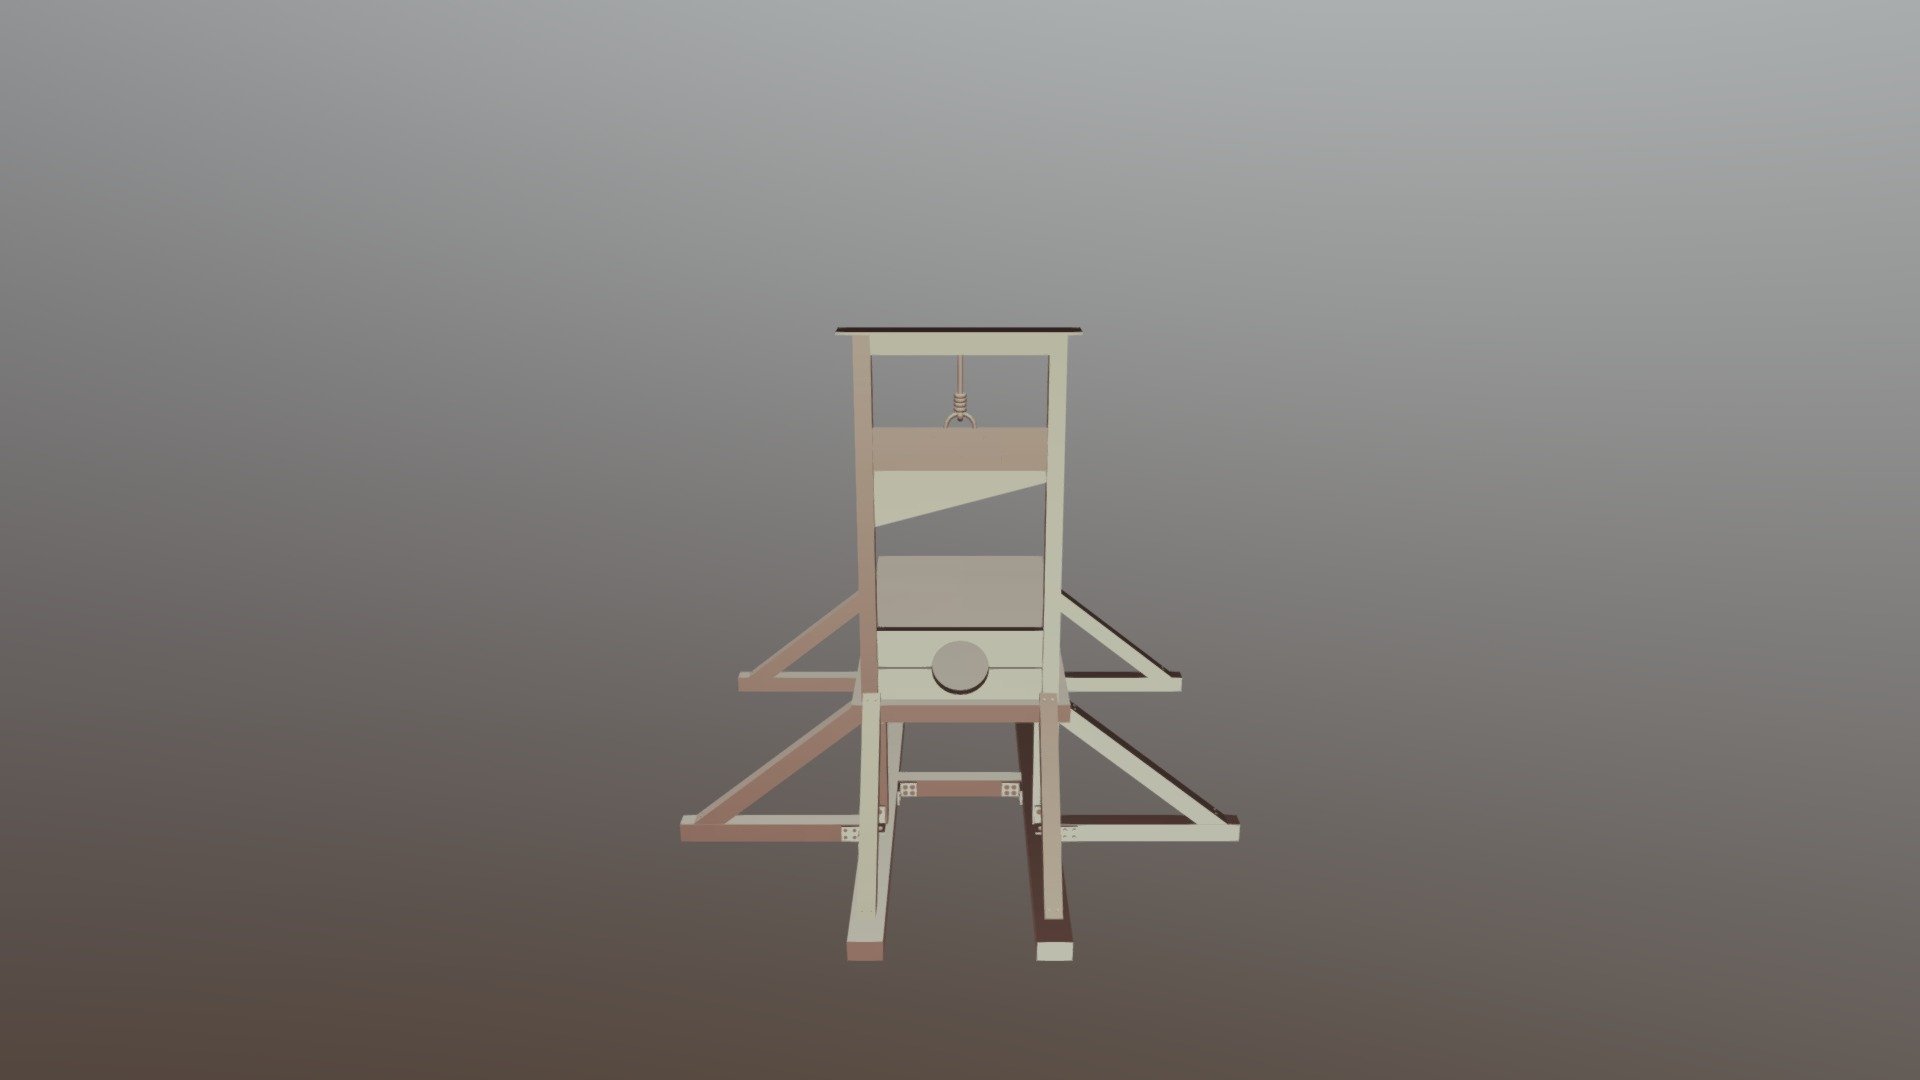 Primitive guillotine